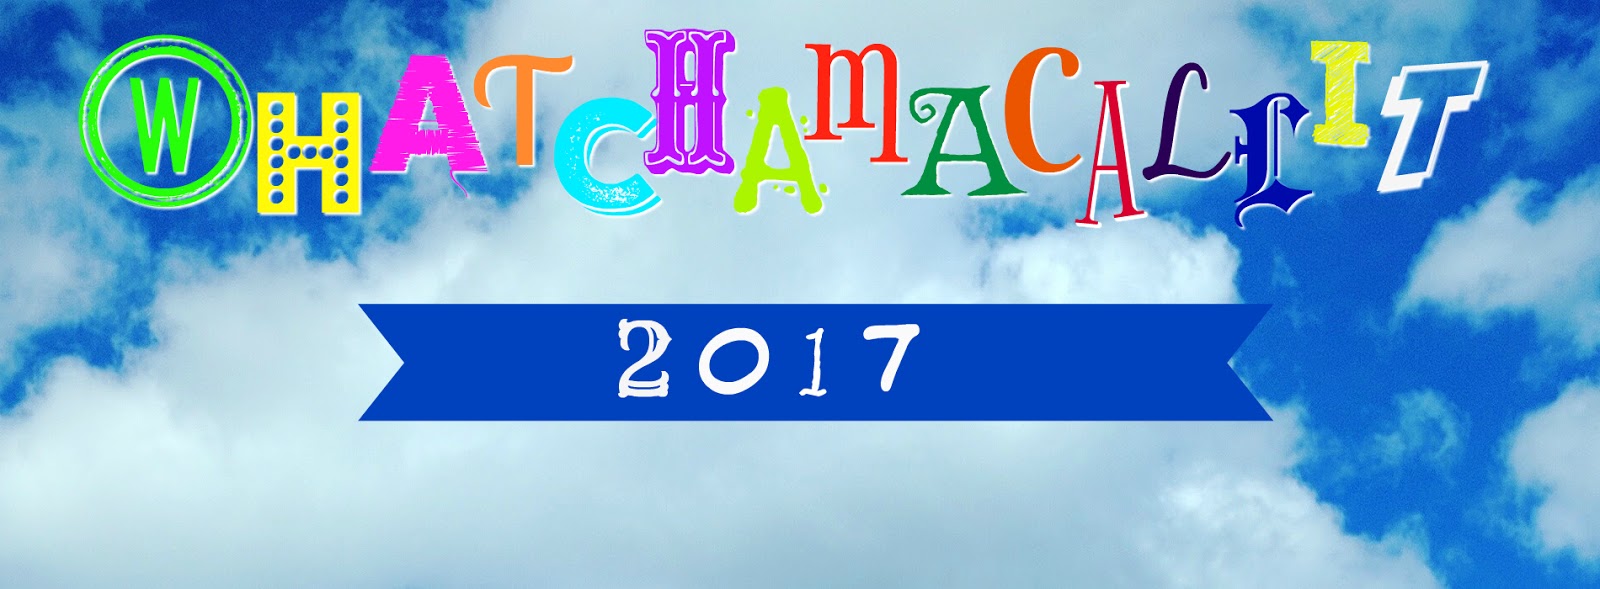 Whatchamacallit 2017